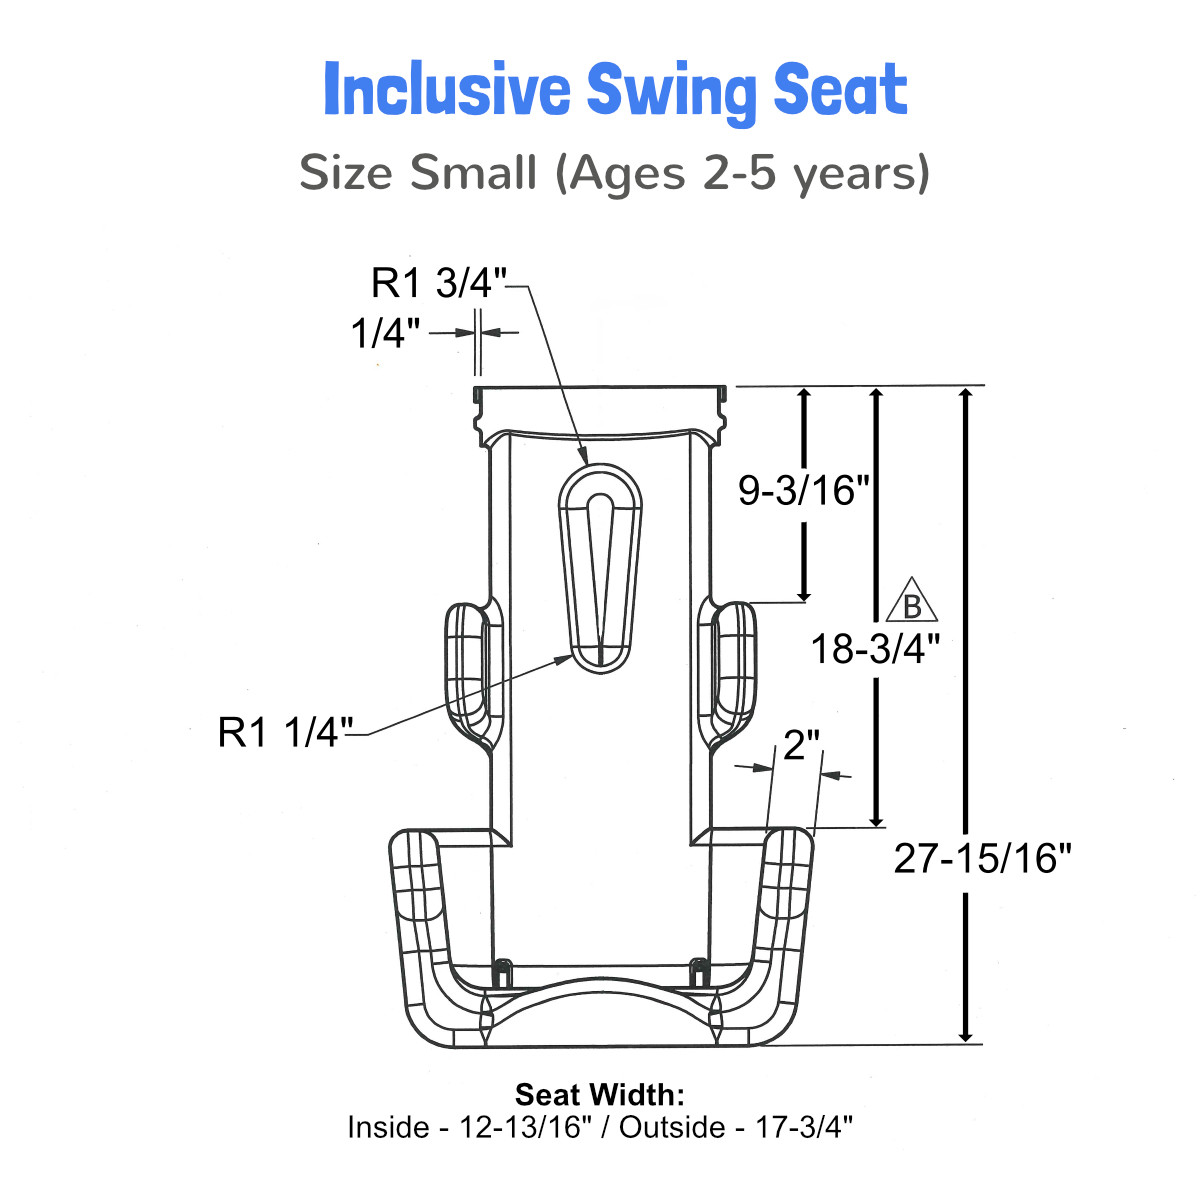 Inclusive ADA Swing Seat - Small